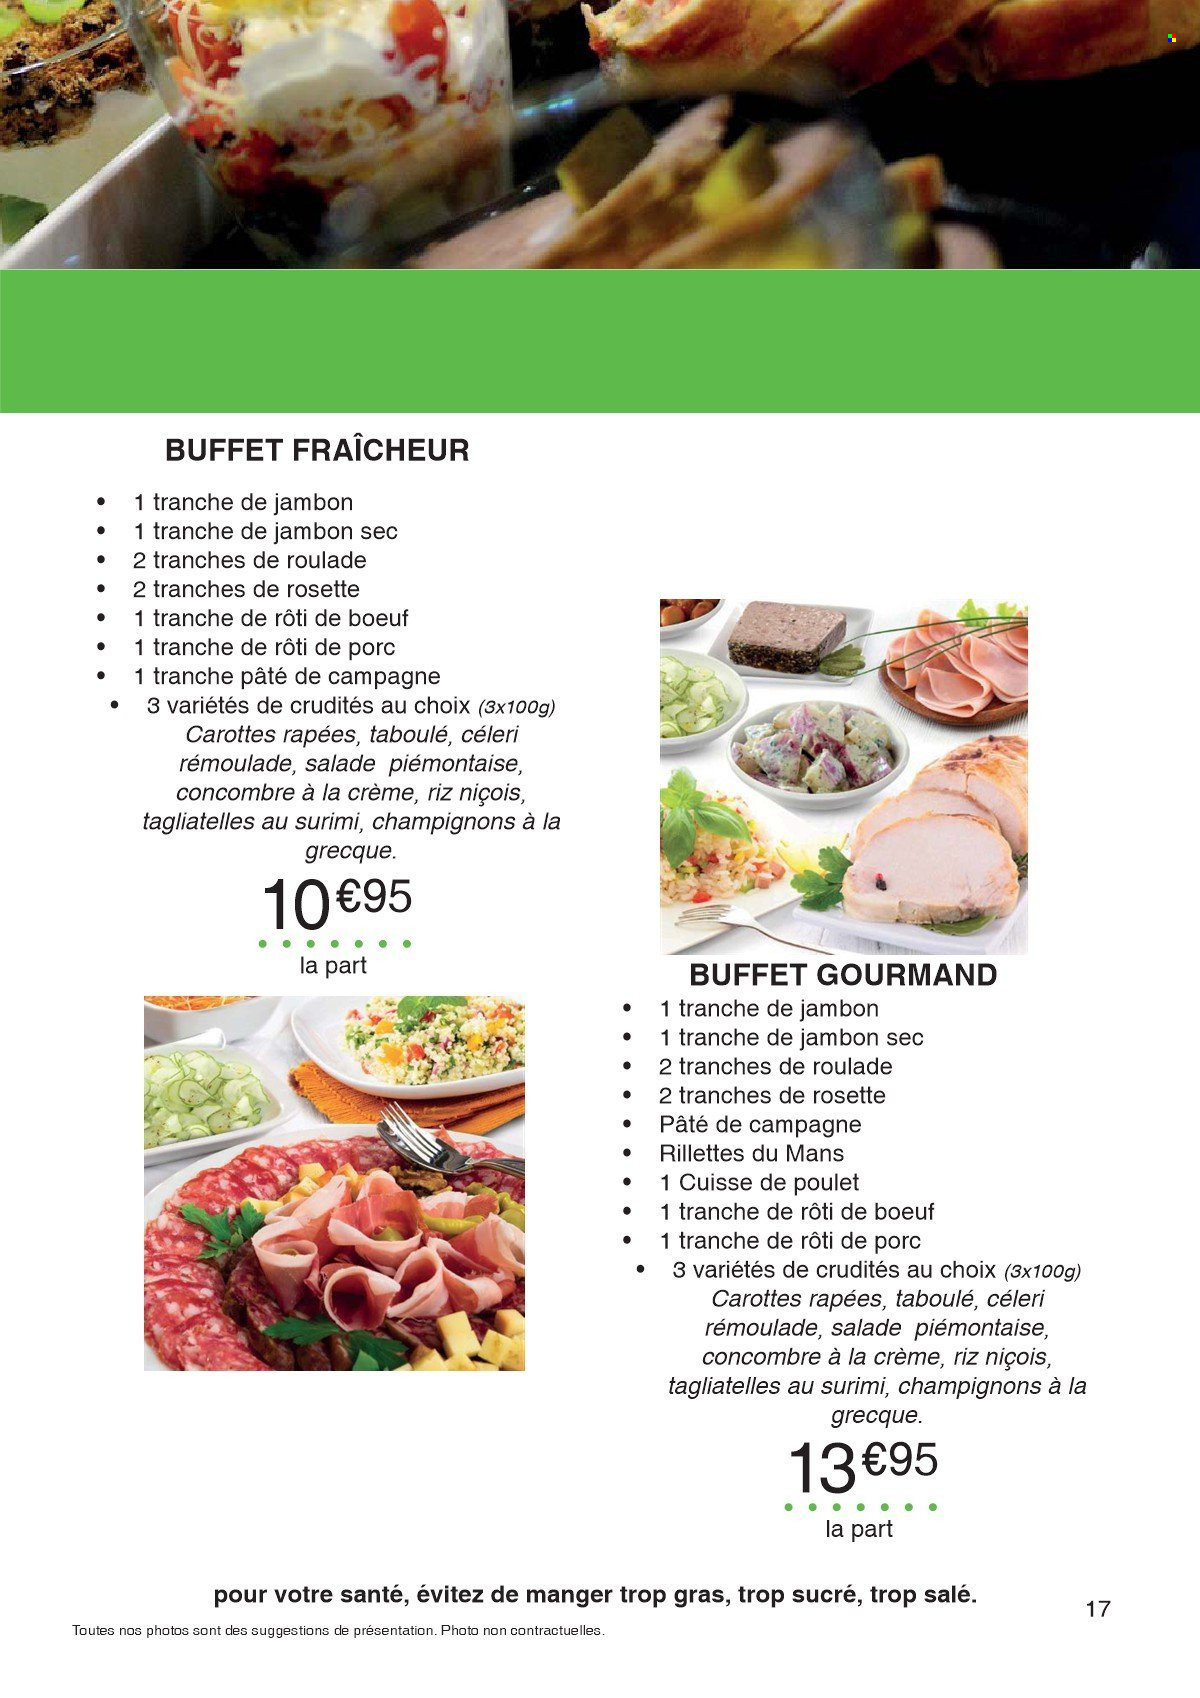 thumbnail - Catalogue Cora - 17/02/2021 - 31/12/2022 - Produits soldés - rôti de porc, viande de porc, salade, carotte, concombre, champignon, viande de poulet, cuisse de poulet, rôti de bœuf, surimi, rillettes, jambon sec, rosette, riz, pâtes, tagliatelles, buffet. Page 17.